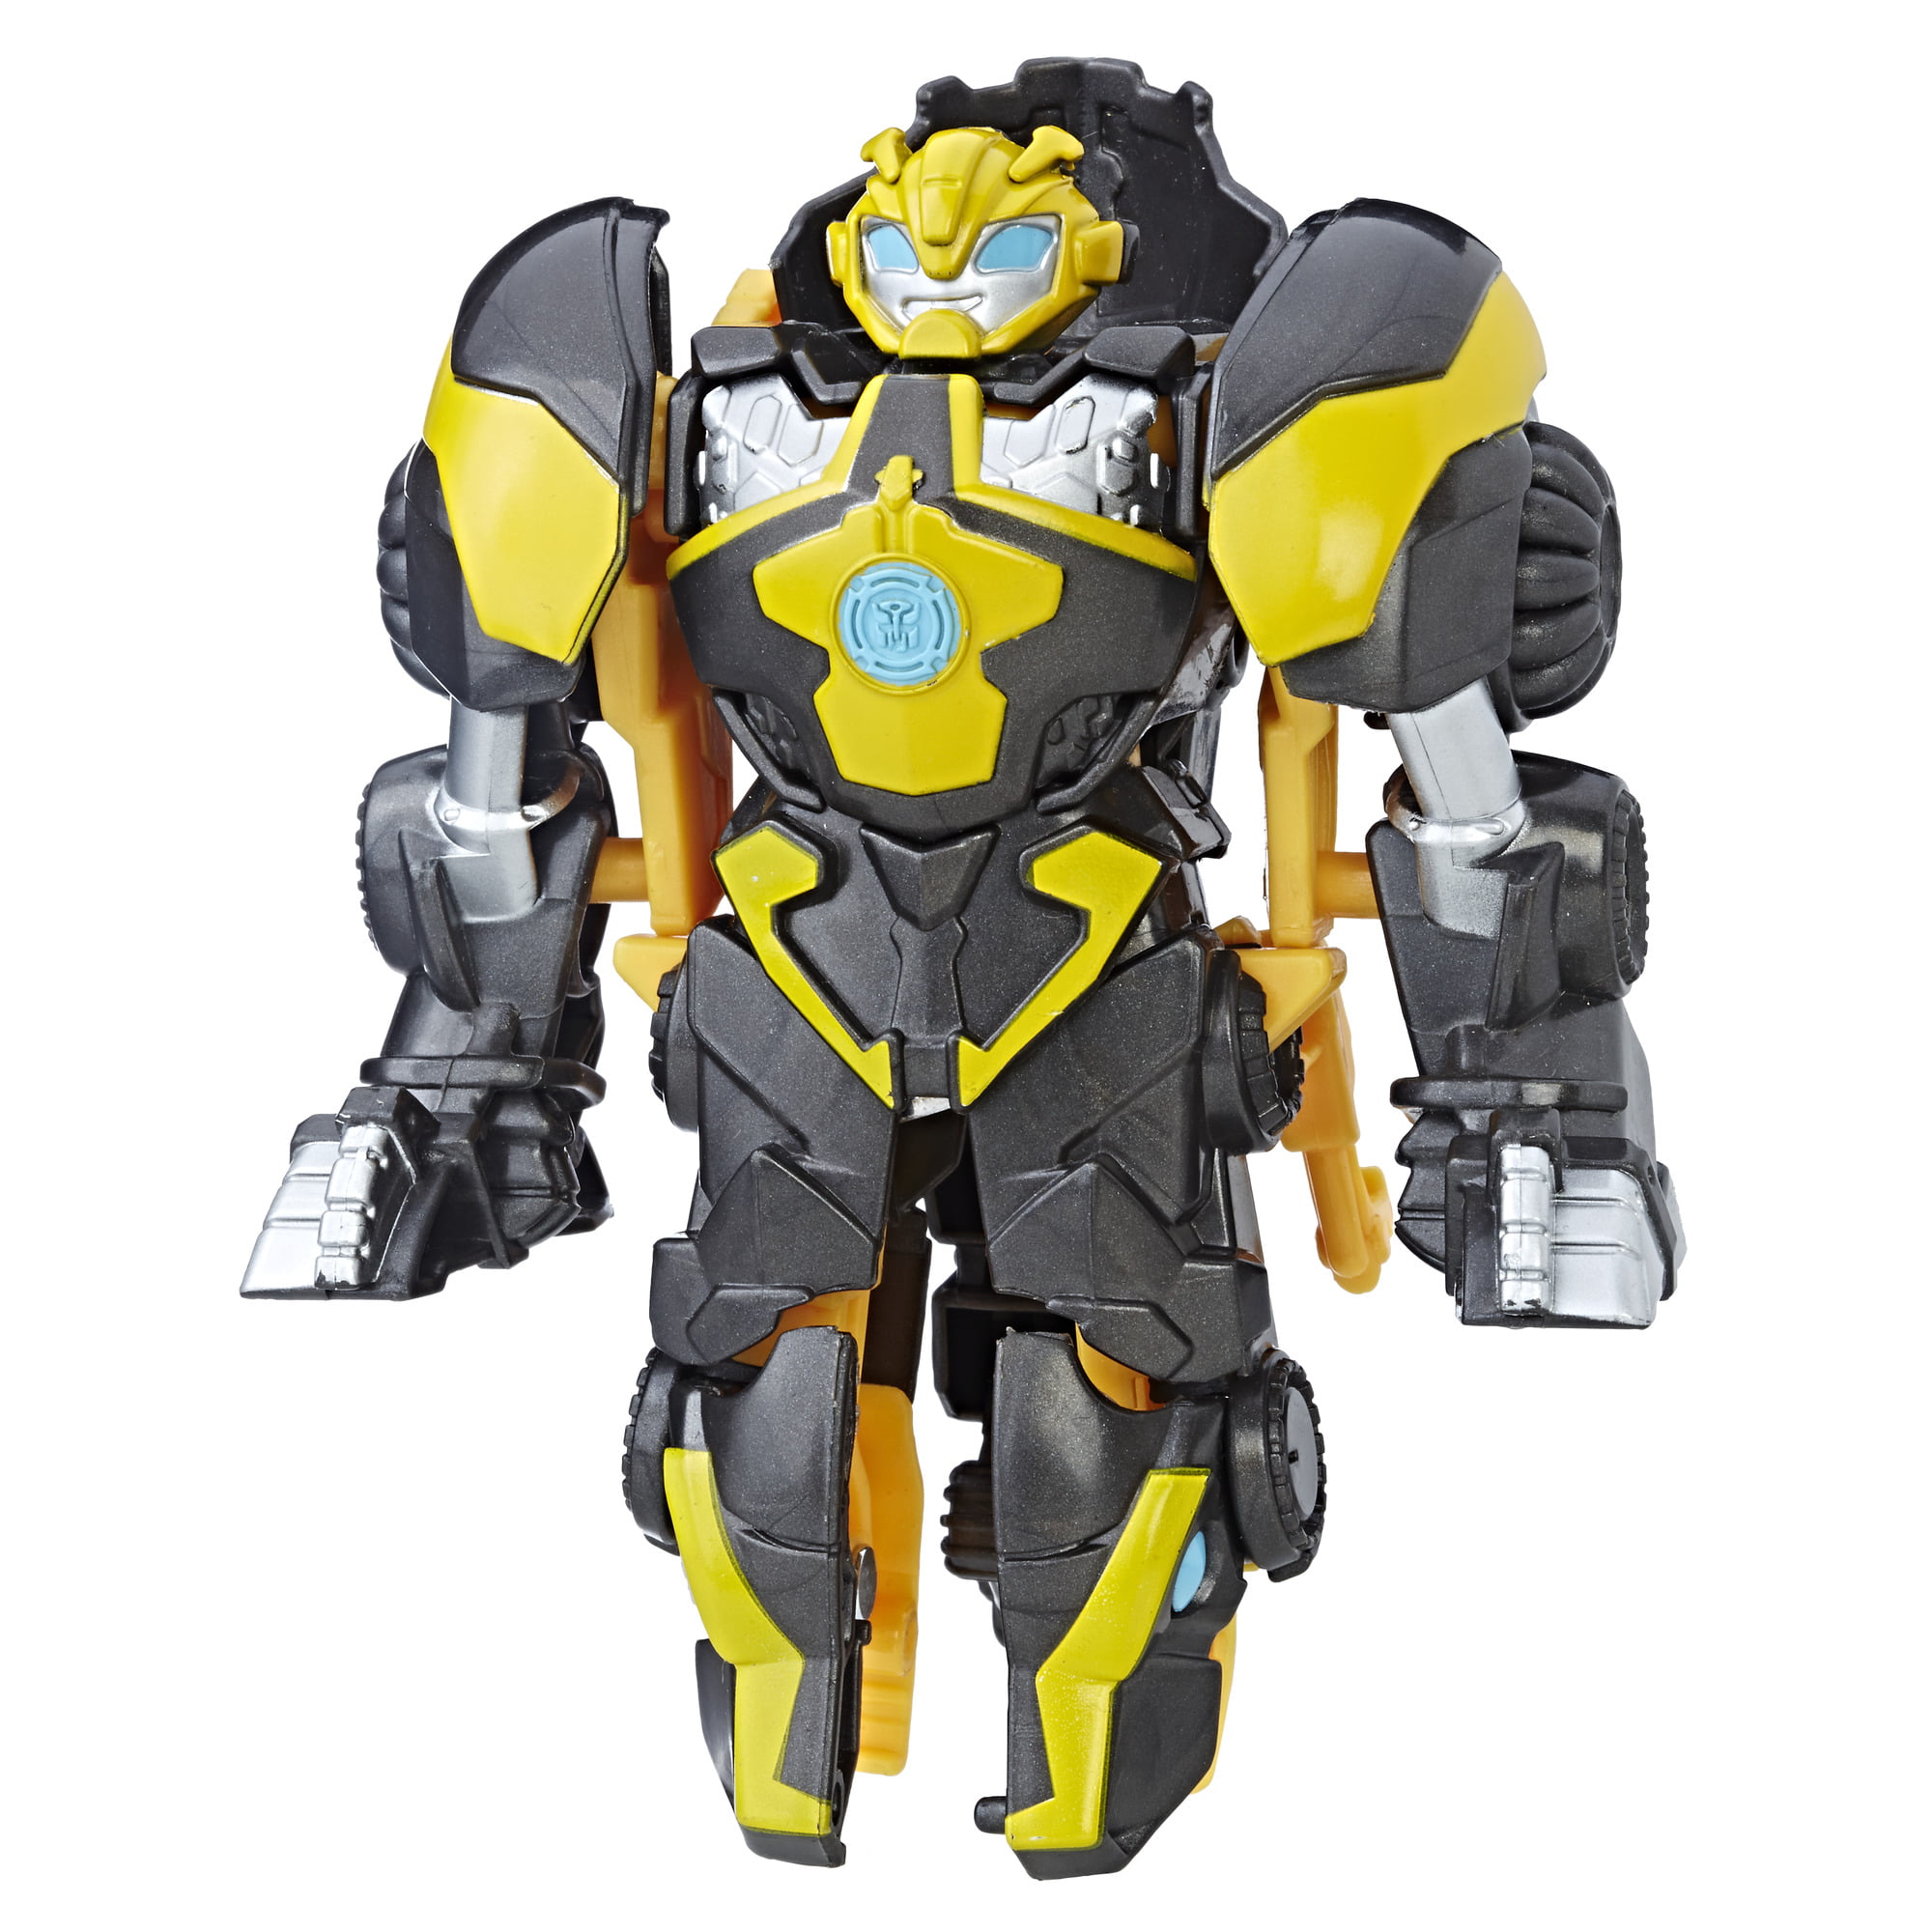 Heroes Playskool Transformers Rescue Bots Roar Bumblebee to Dinobot Raptor 